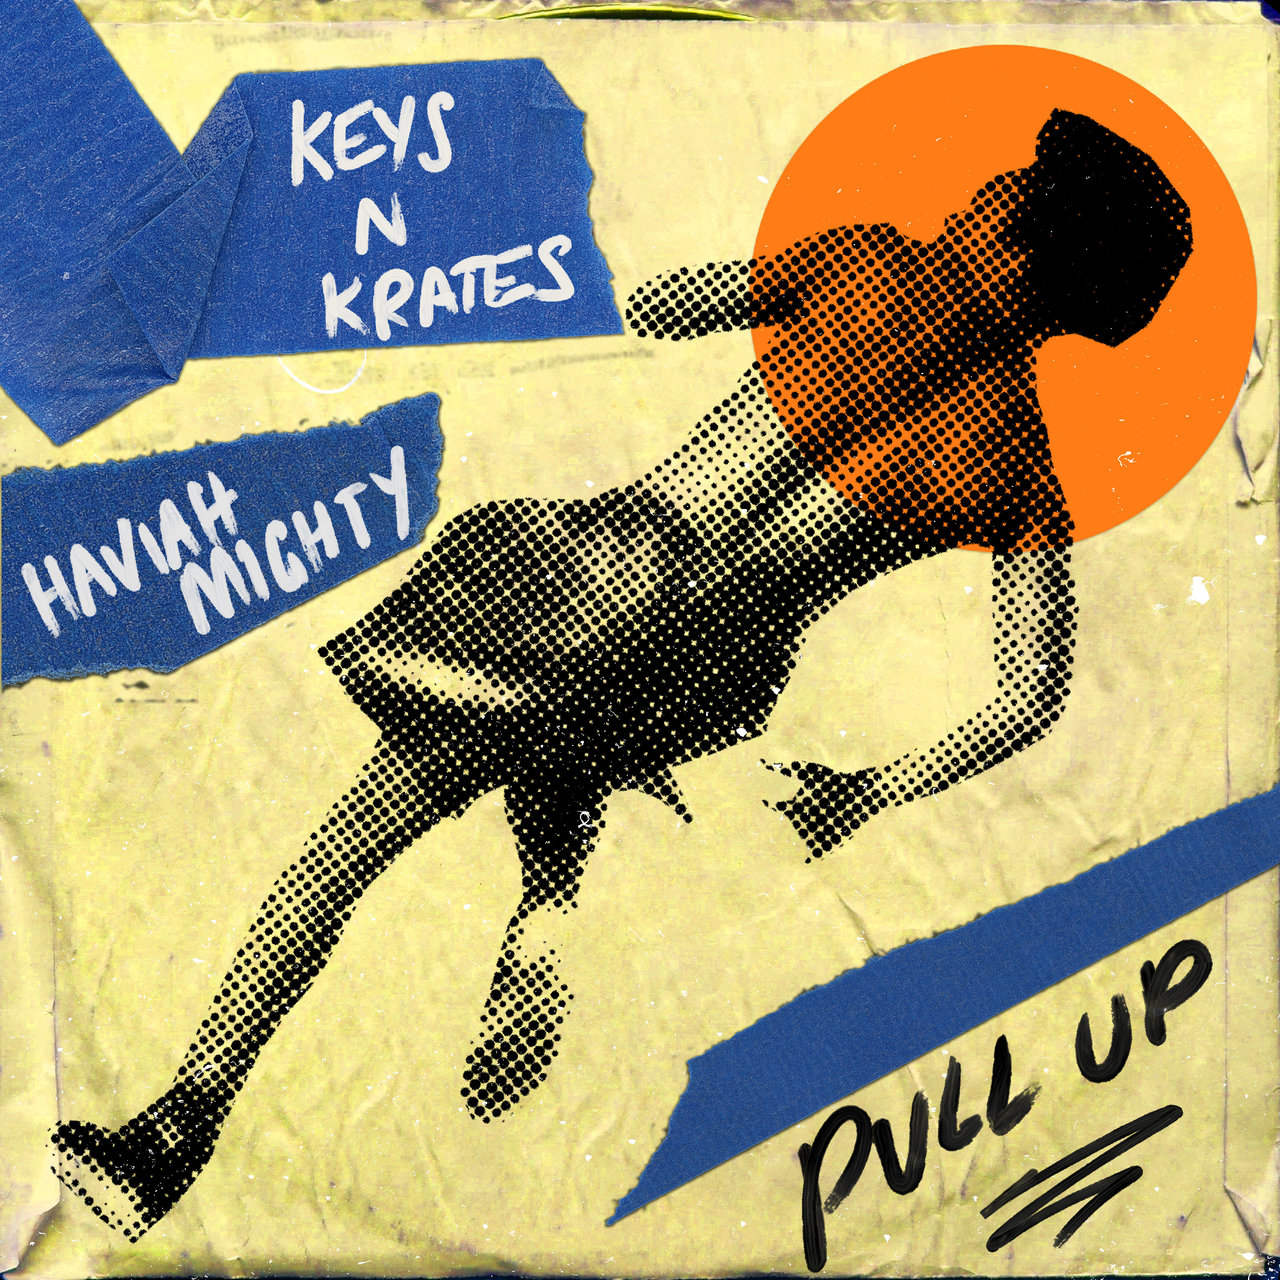 Keys N Krates & Haviah Mighty Pull Up cover artwork